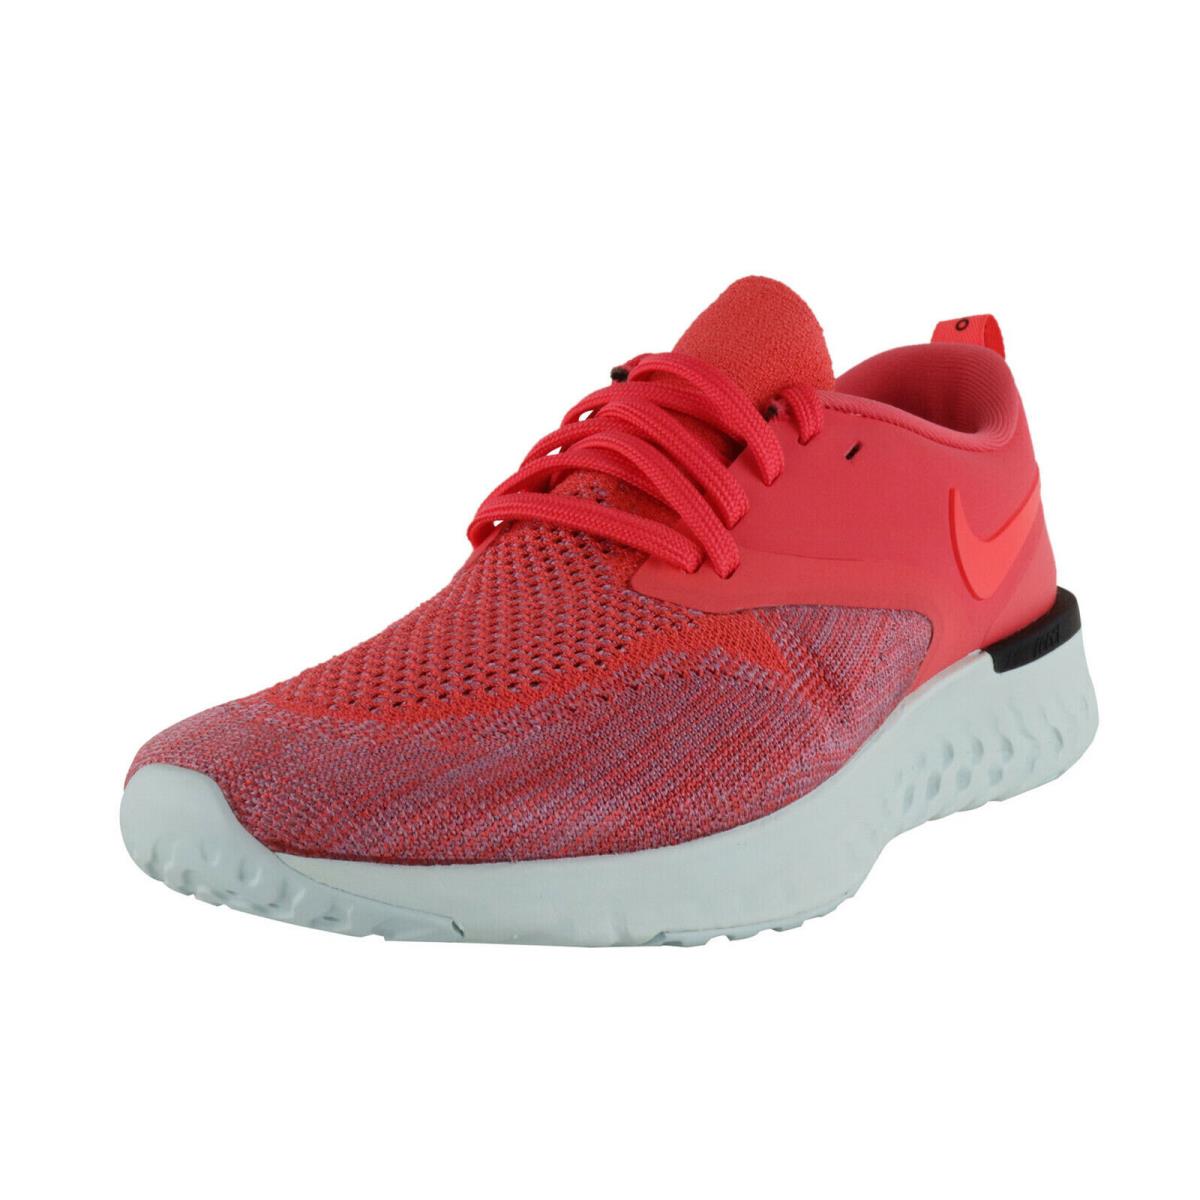 Nike shoes Odyssey React Flyknit - EMBER GLOW / RED ORBIT-PLUM DUST 4